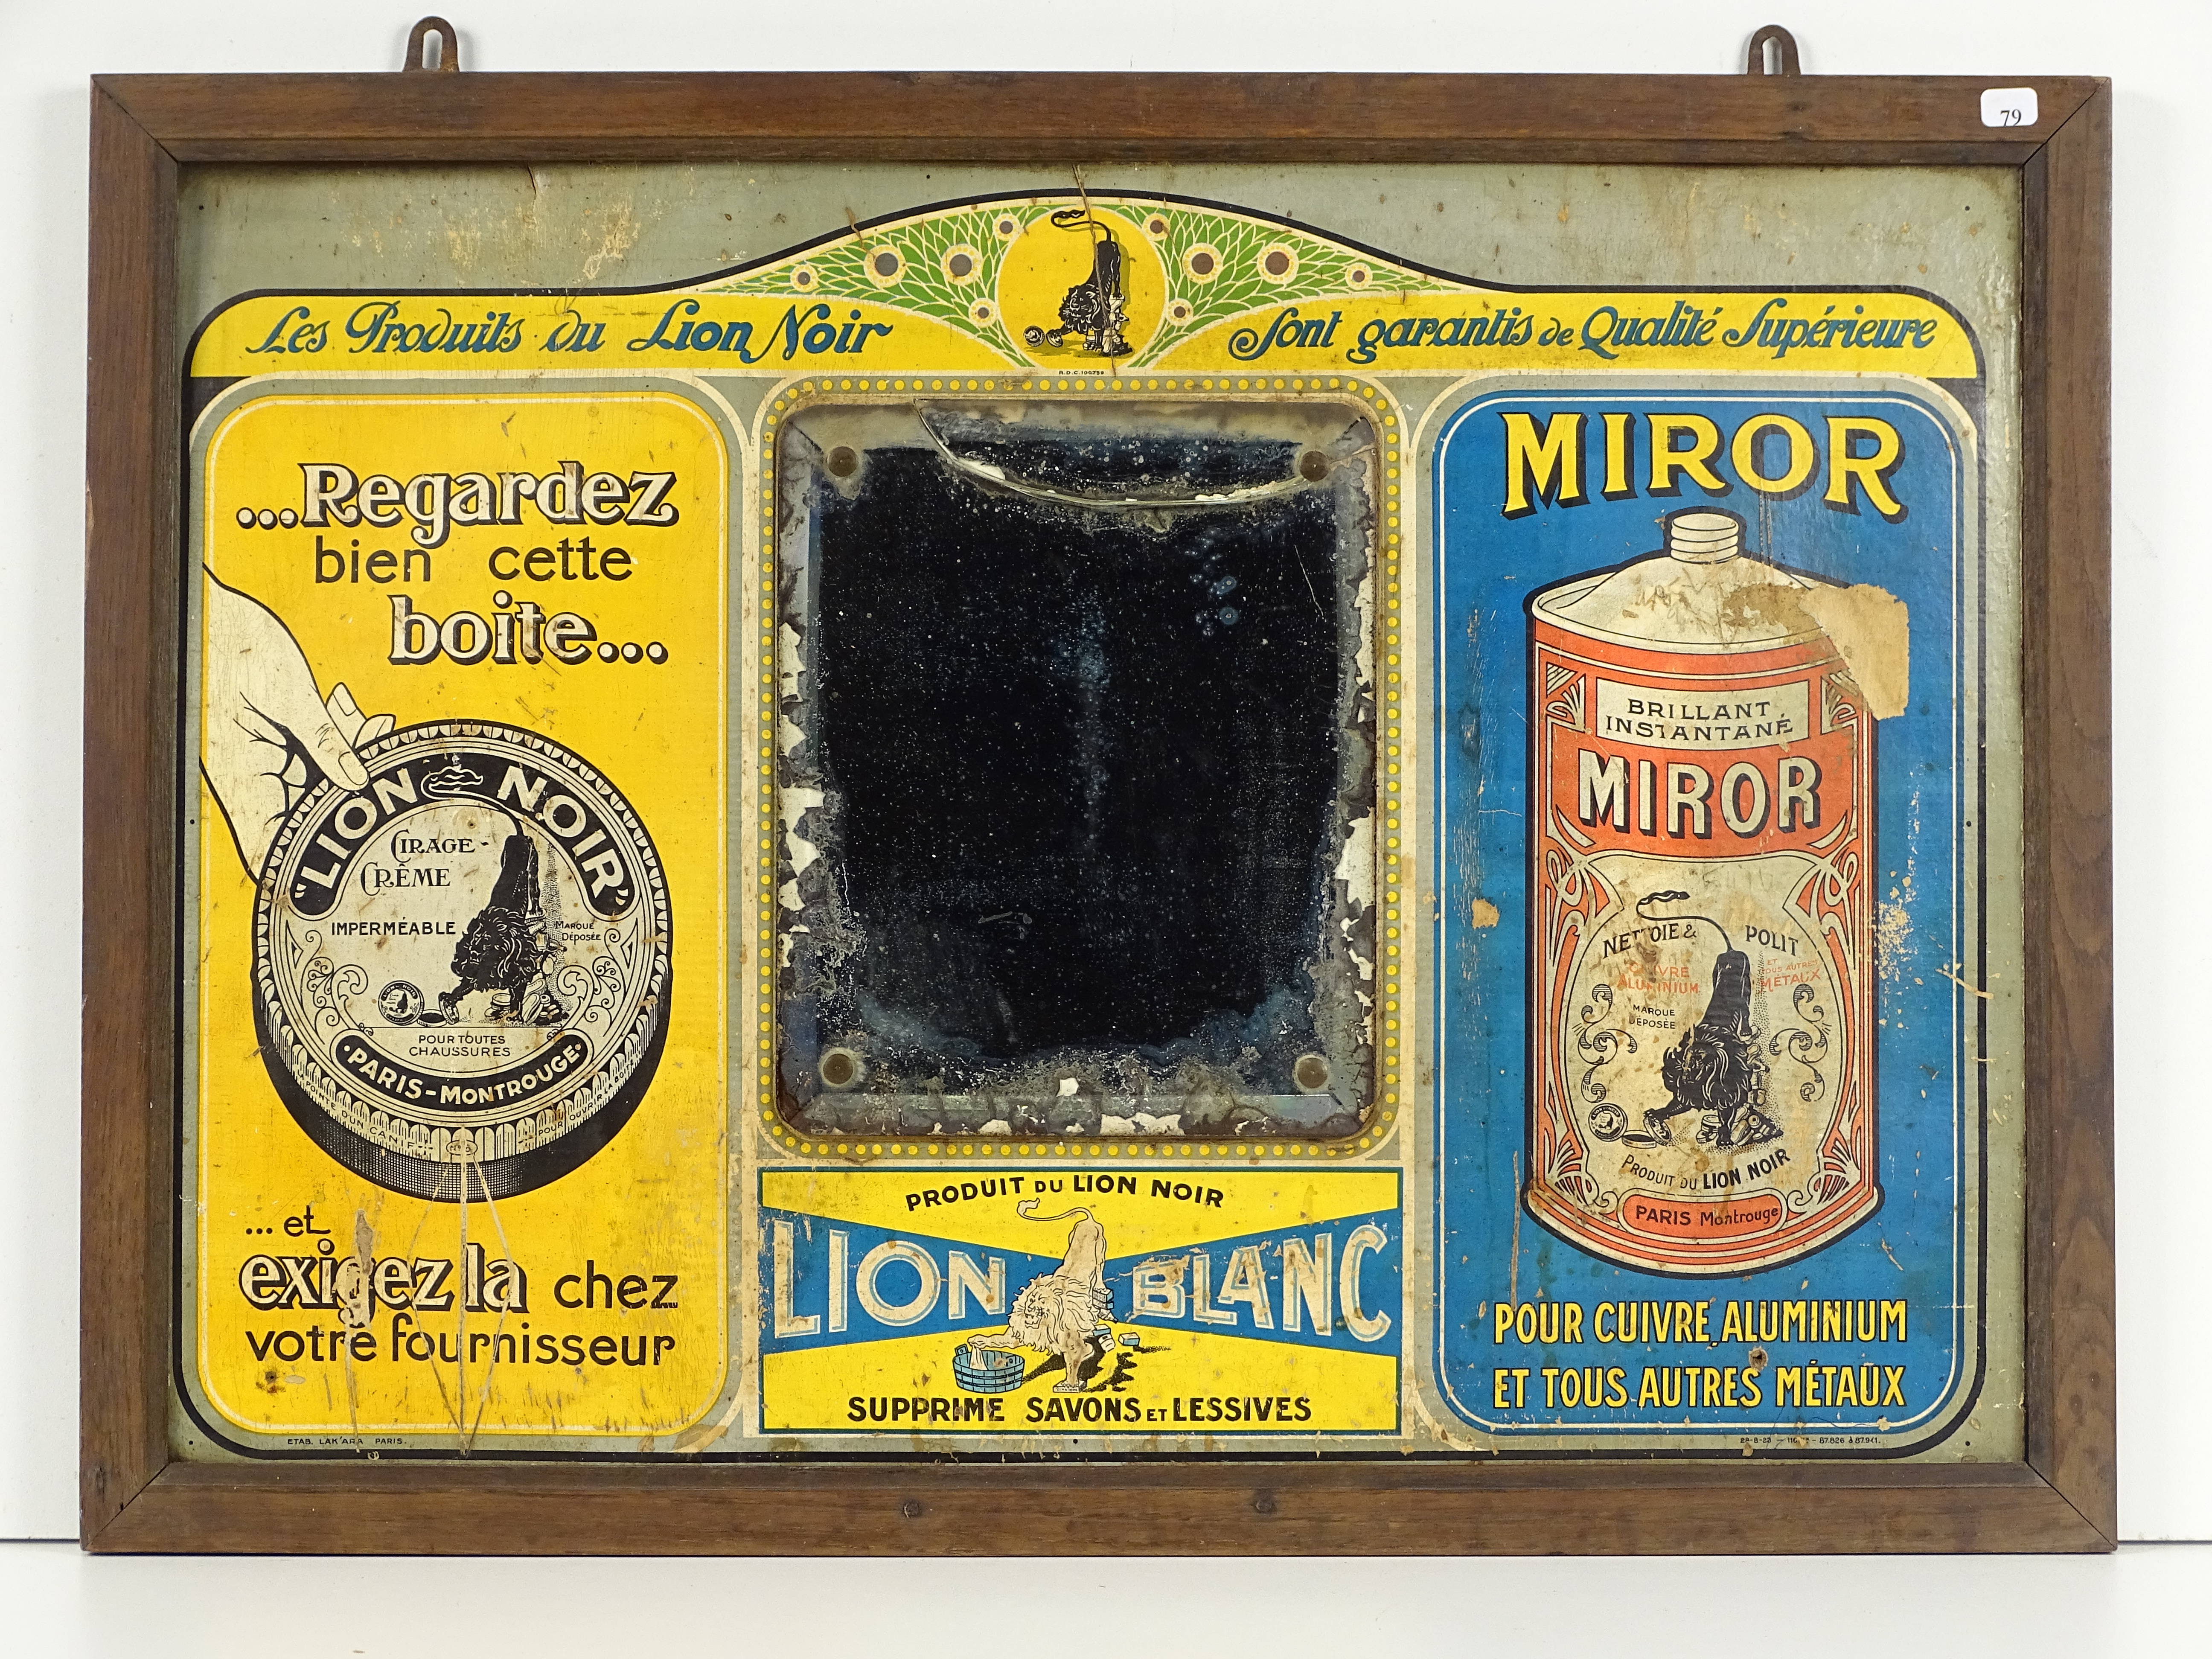 MIROR Brillant Liquide - Lion Noir à Paris-Montrouge : Plaque émaillée  cintrée de forme ovale. Perforations, Vente aux enchères : Estampes -  Affiches - Gravure - Lithographie - Eauforte